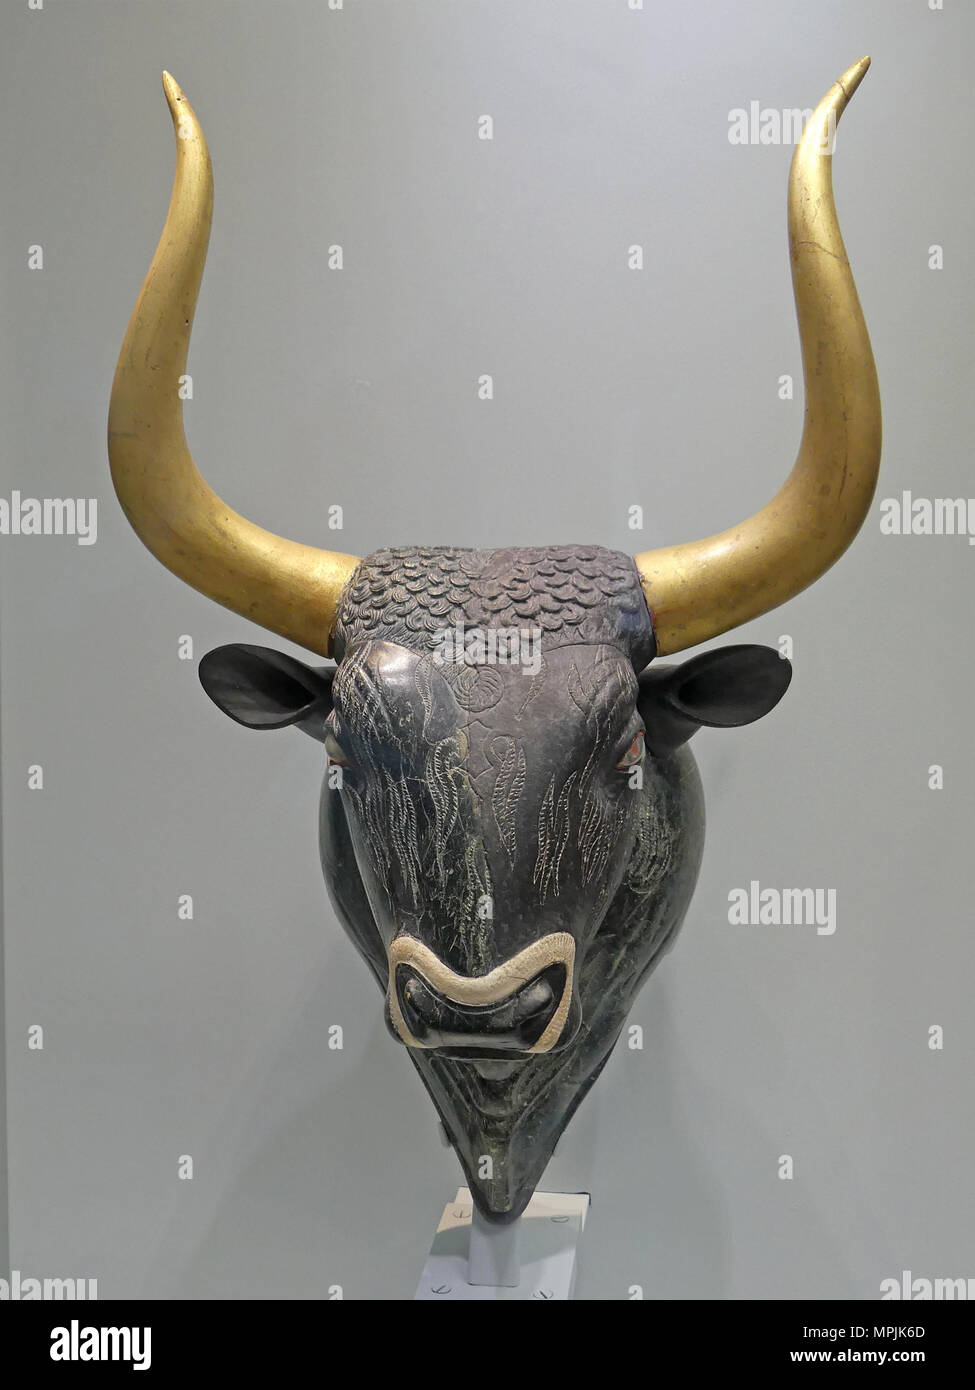 La cabeza de los toros fotografías e imágenes de alta resolución - Alamy